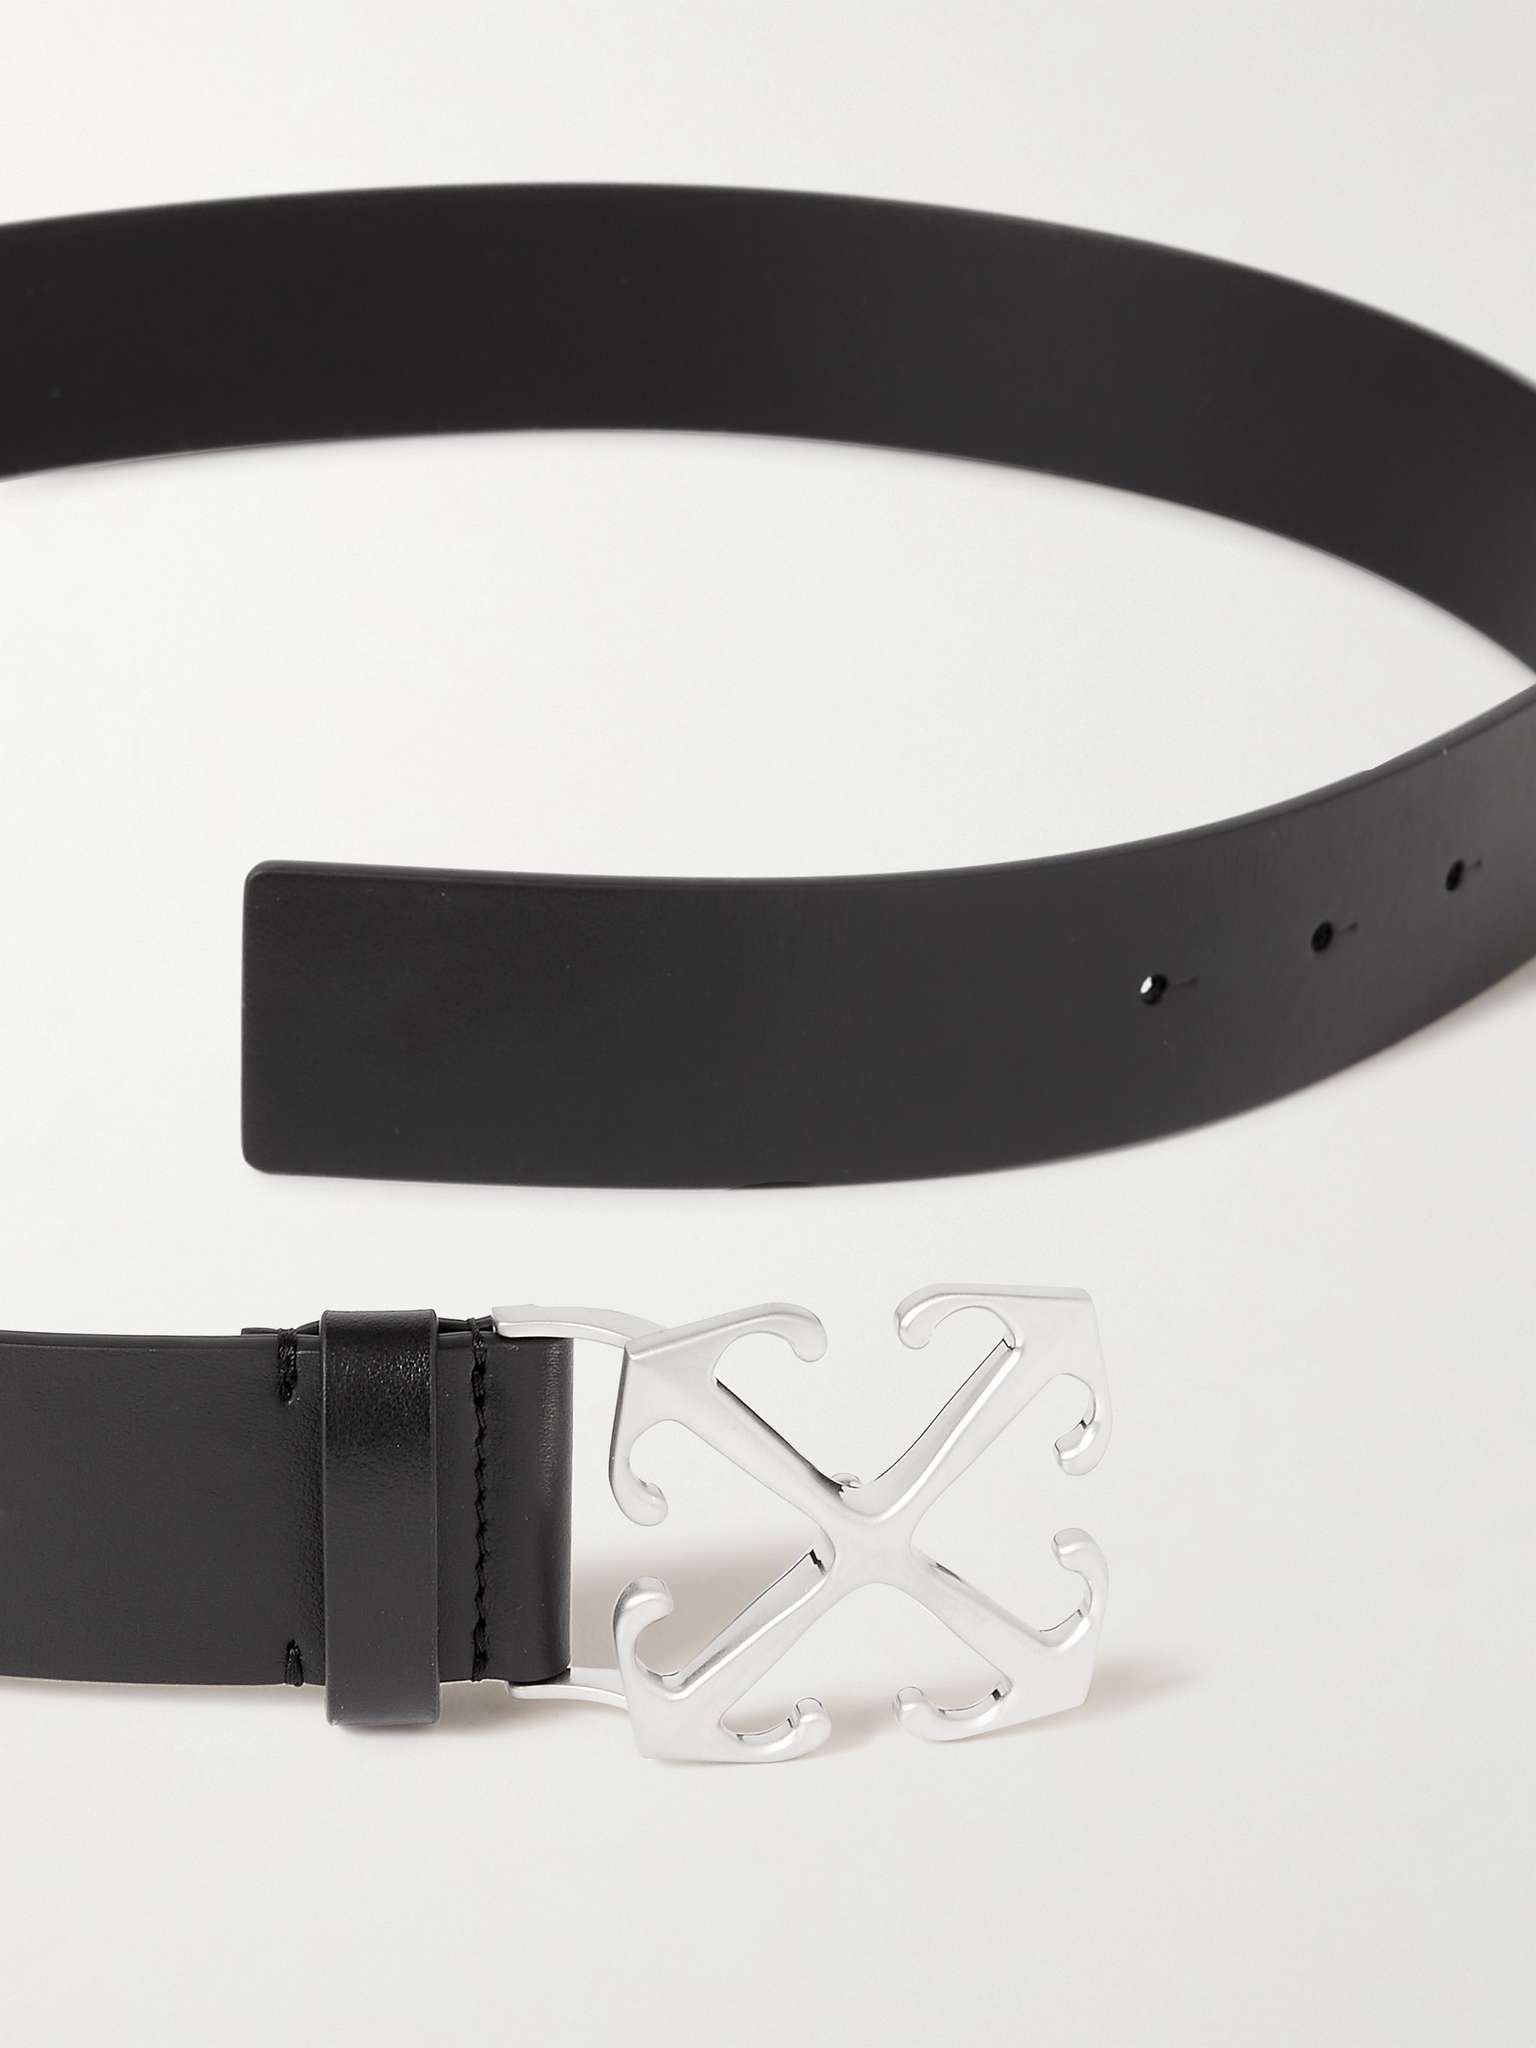 Off-White 3cm Leather Belt - Men - Black Belts